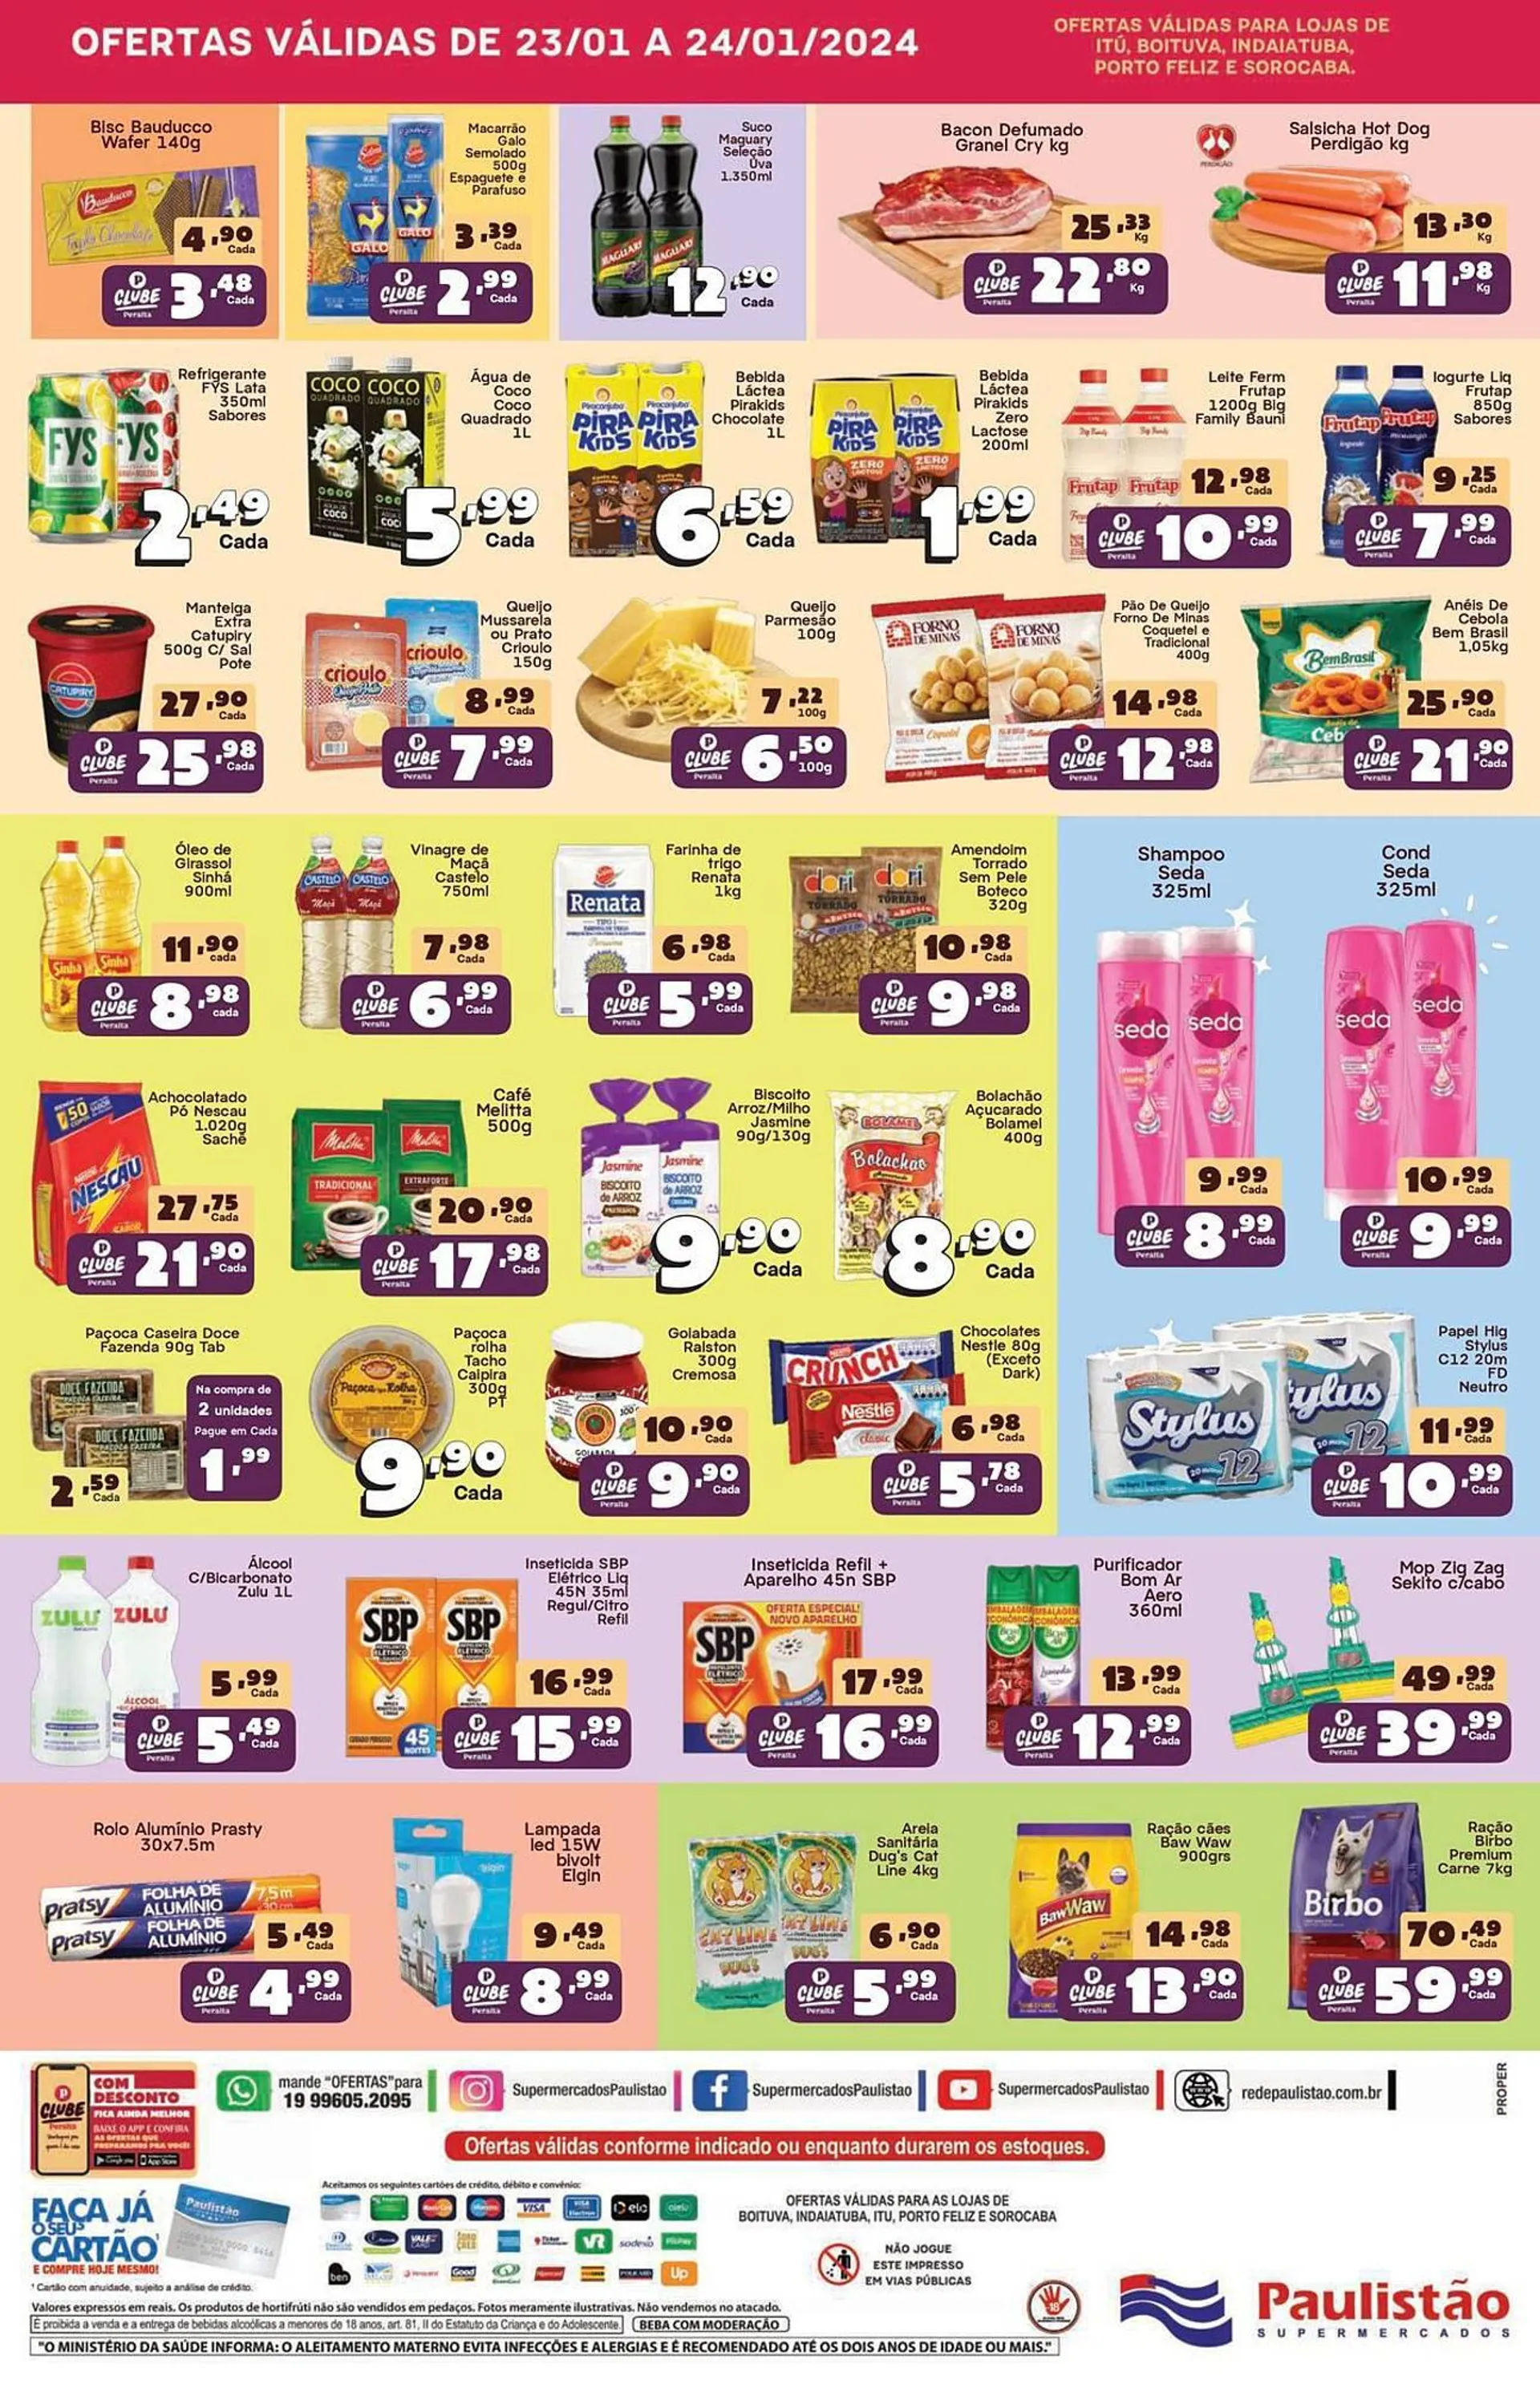 Encarte de Catálogo Paulistão Supermercados 23 de janeiro até 25 de janeiro 2024 - Pagina 2